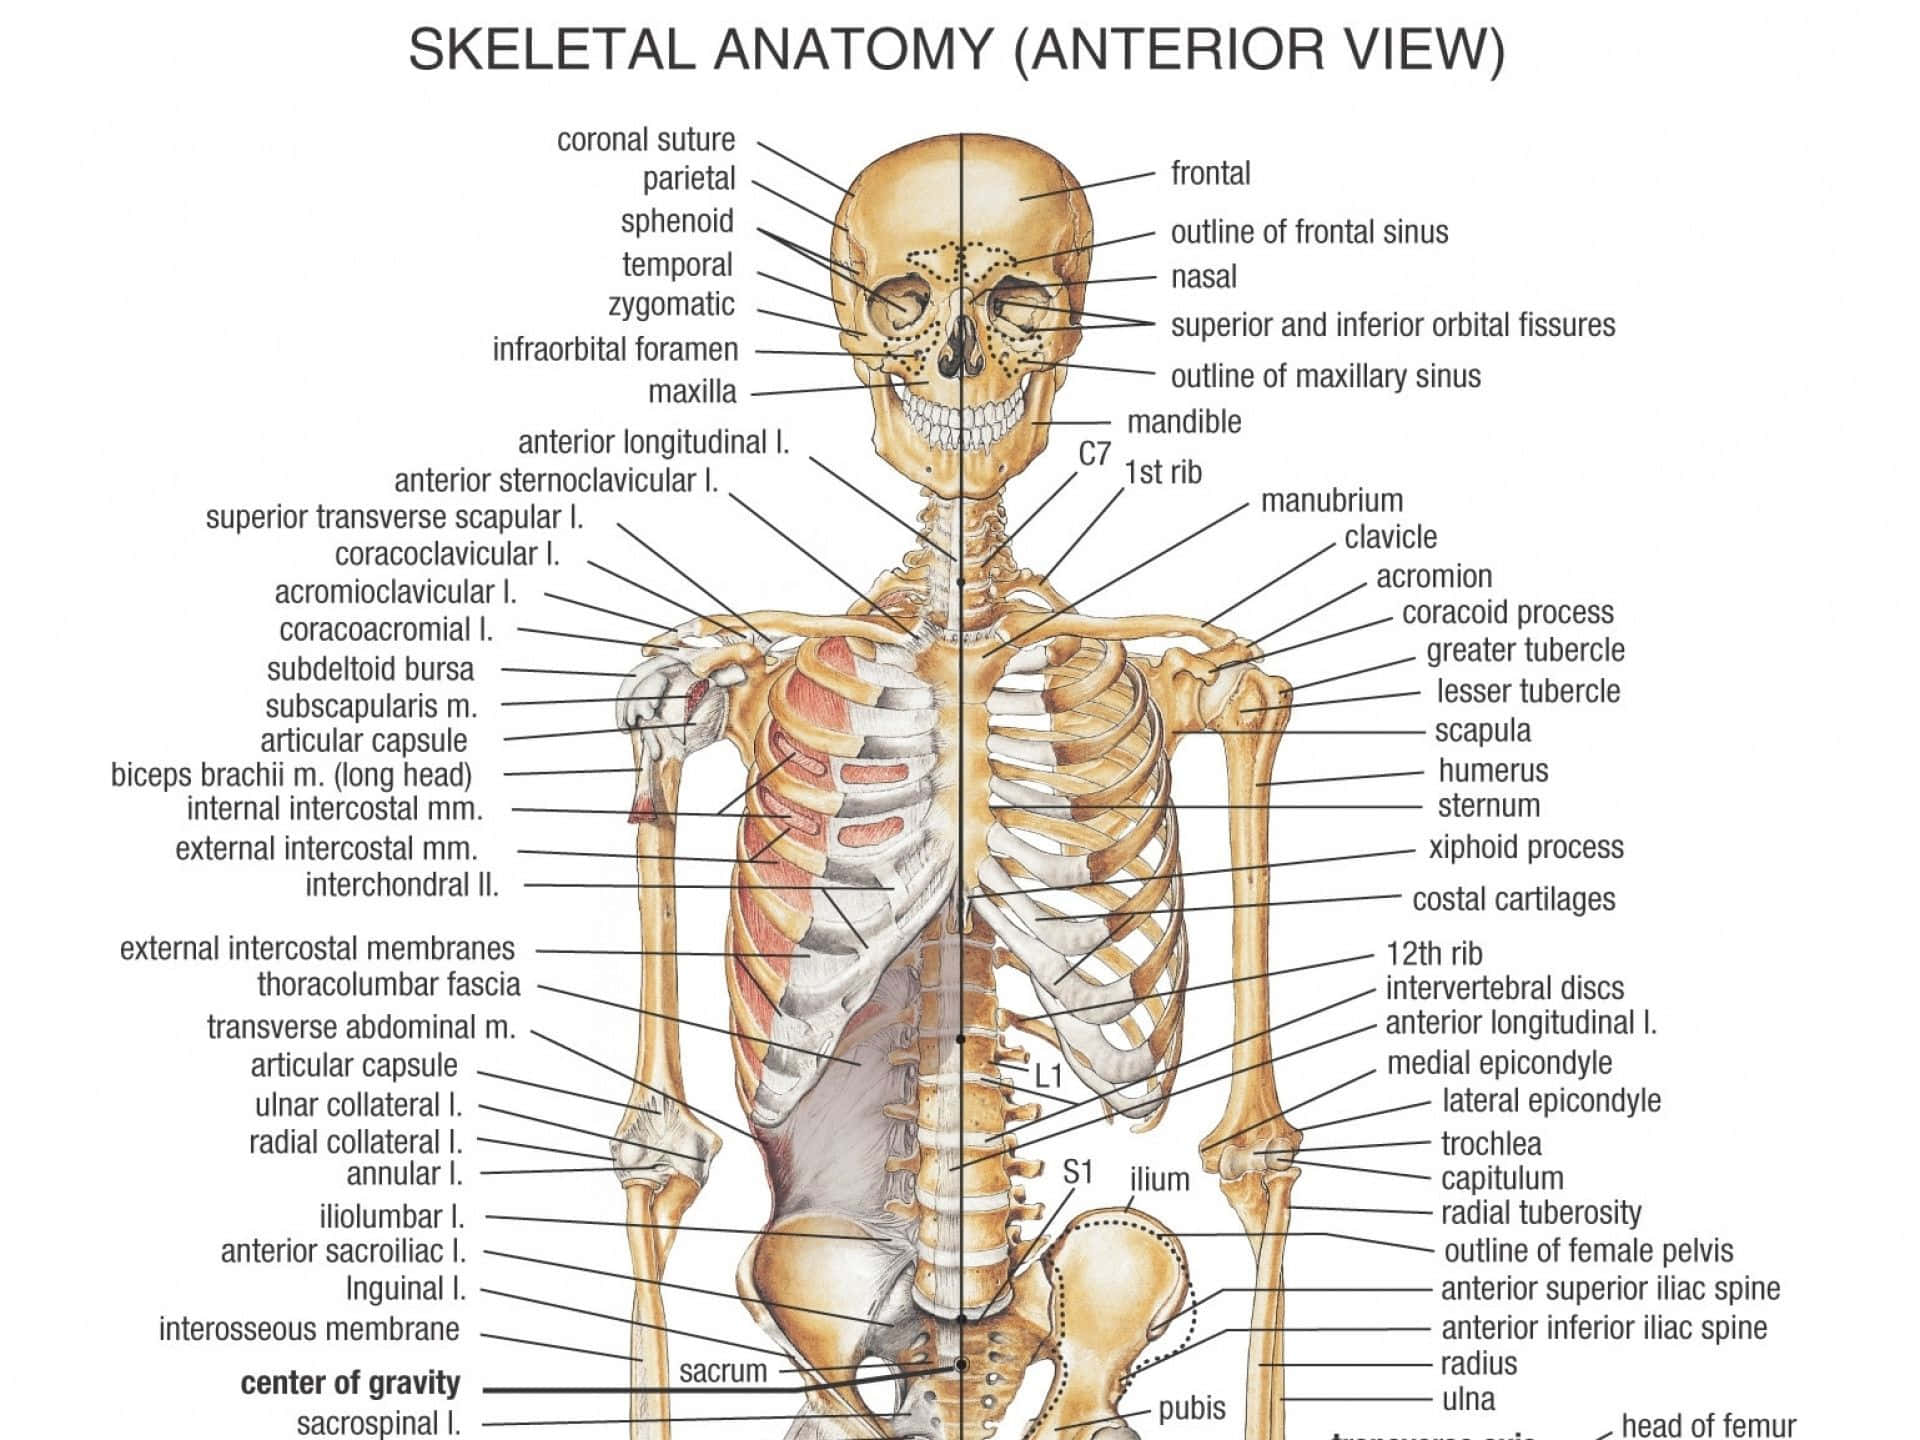 Skeleton Anatomy - Anterio View